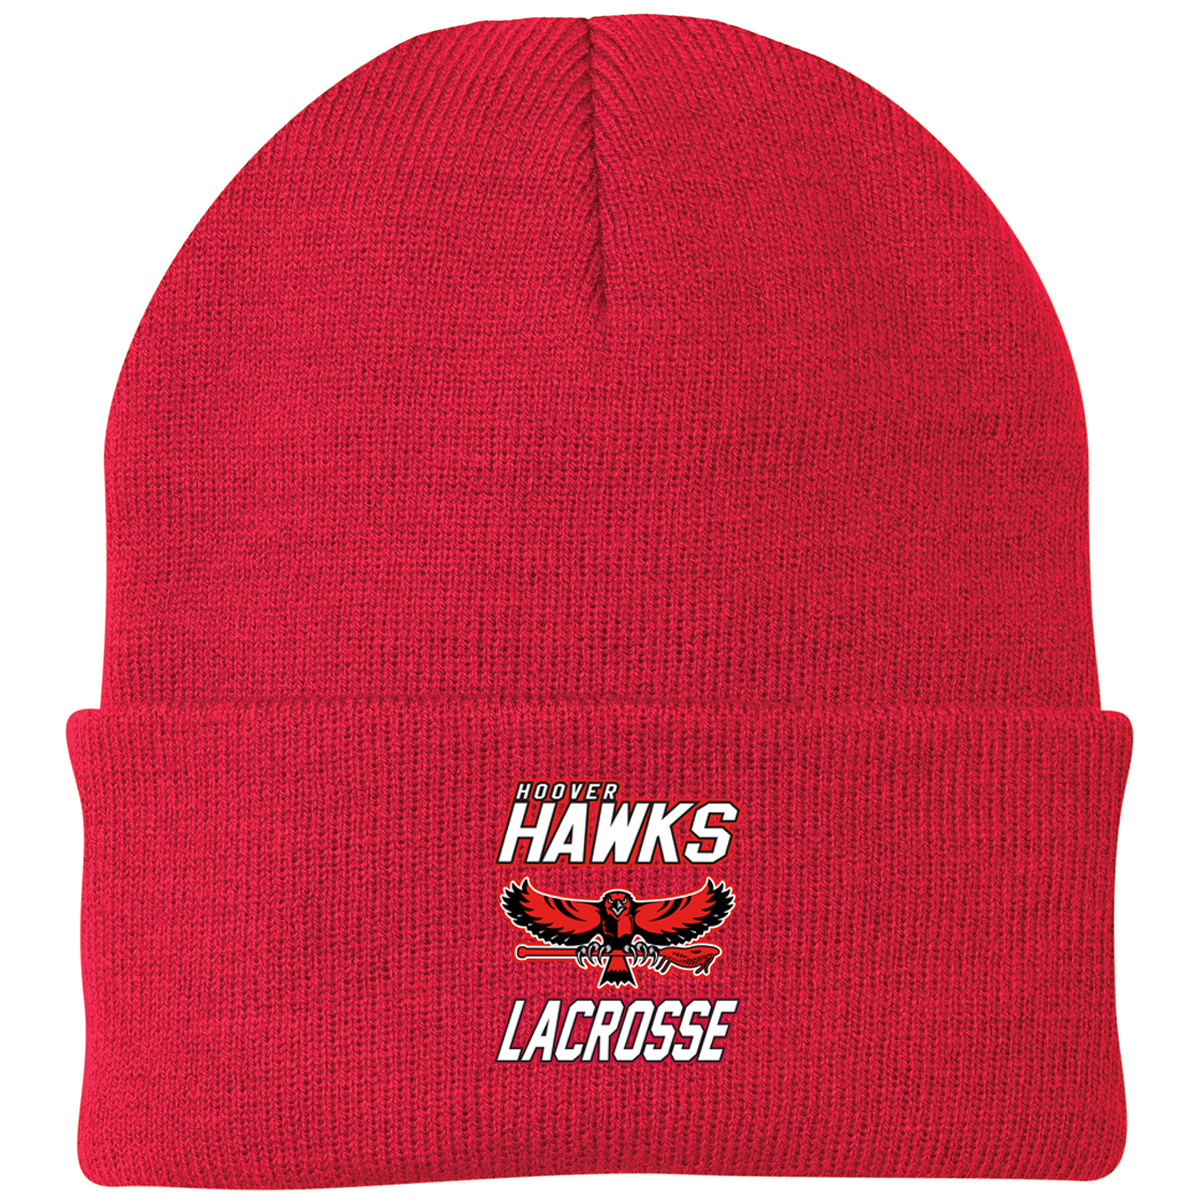 Hawks Lacrosse Knit Beanie